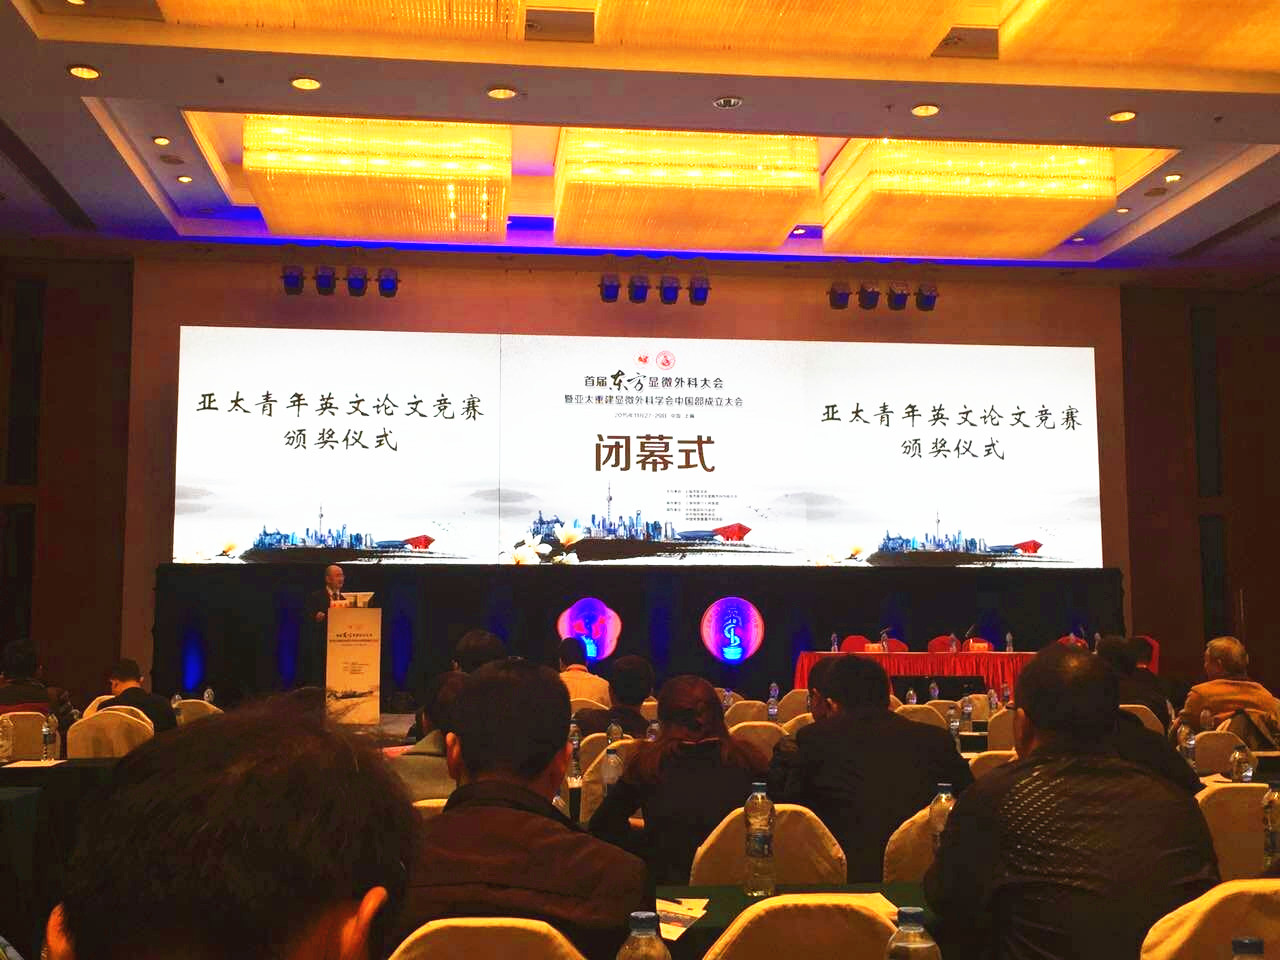 祝贺首届东方显微外科大会暨亚太重建显微外科学会中国部成立